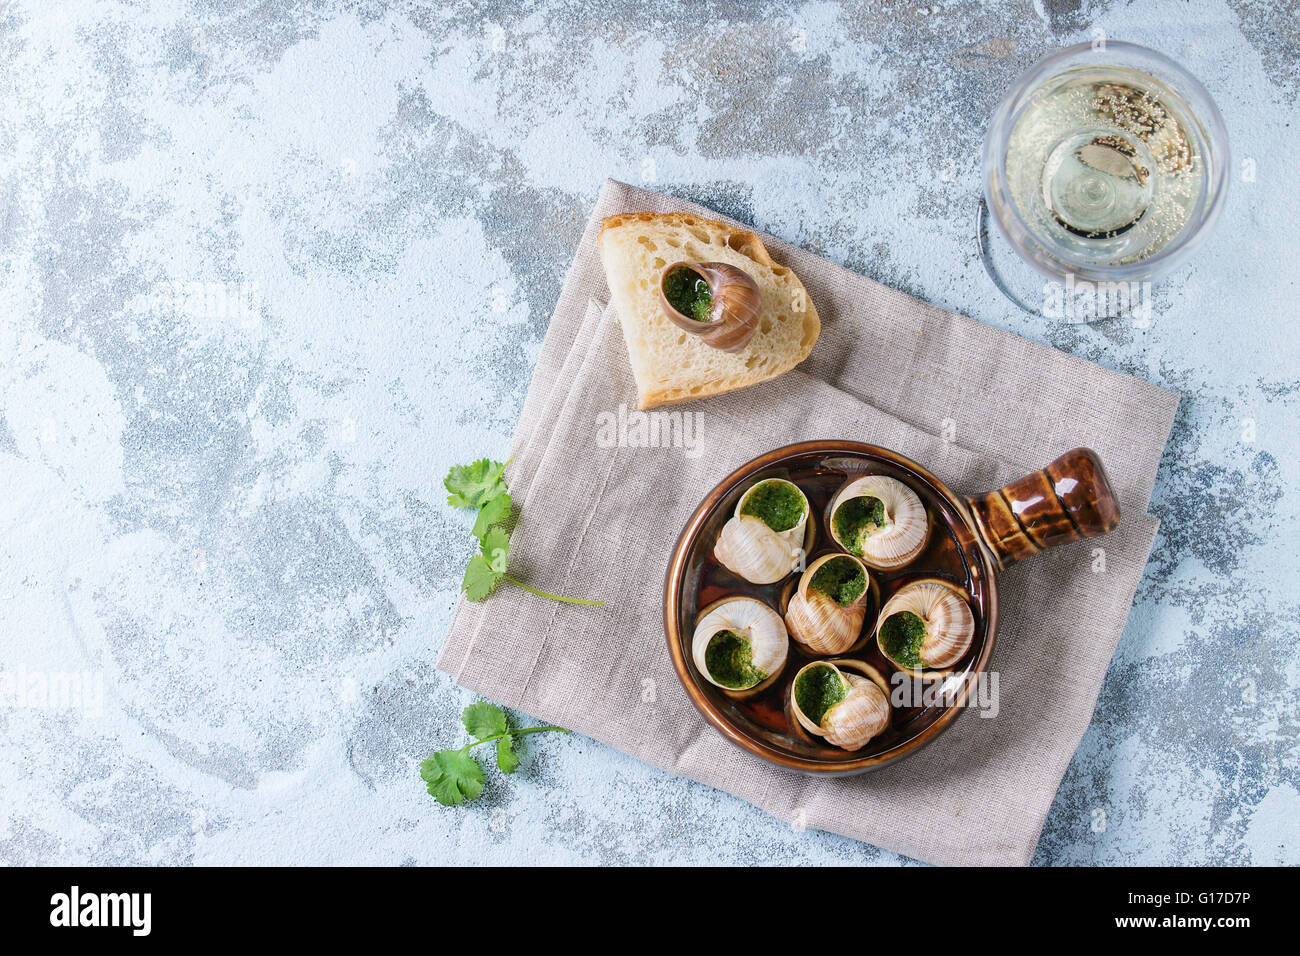 Escargots de Bourgogne - Schnecken mit Kräuter-Butter, in traditionellen keramischen Pfanne mit Petersilie, Brot und ein Glas Weißwein auf tex Stockfoto